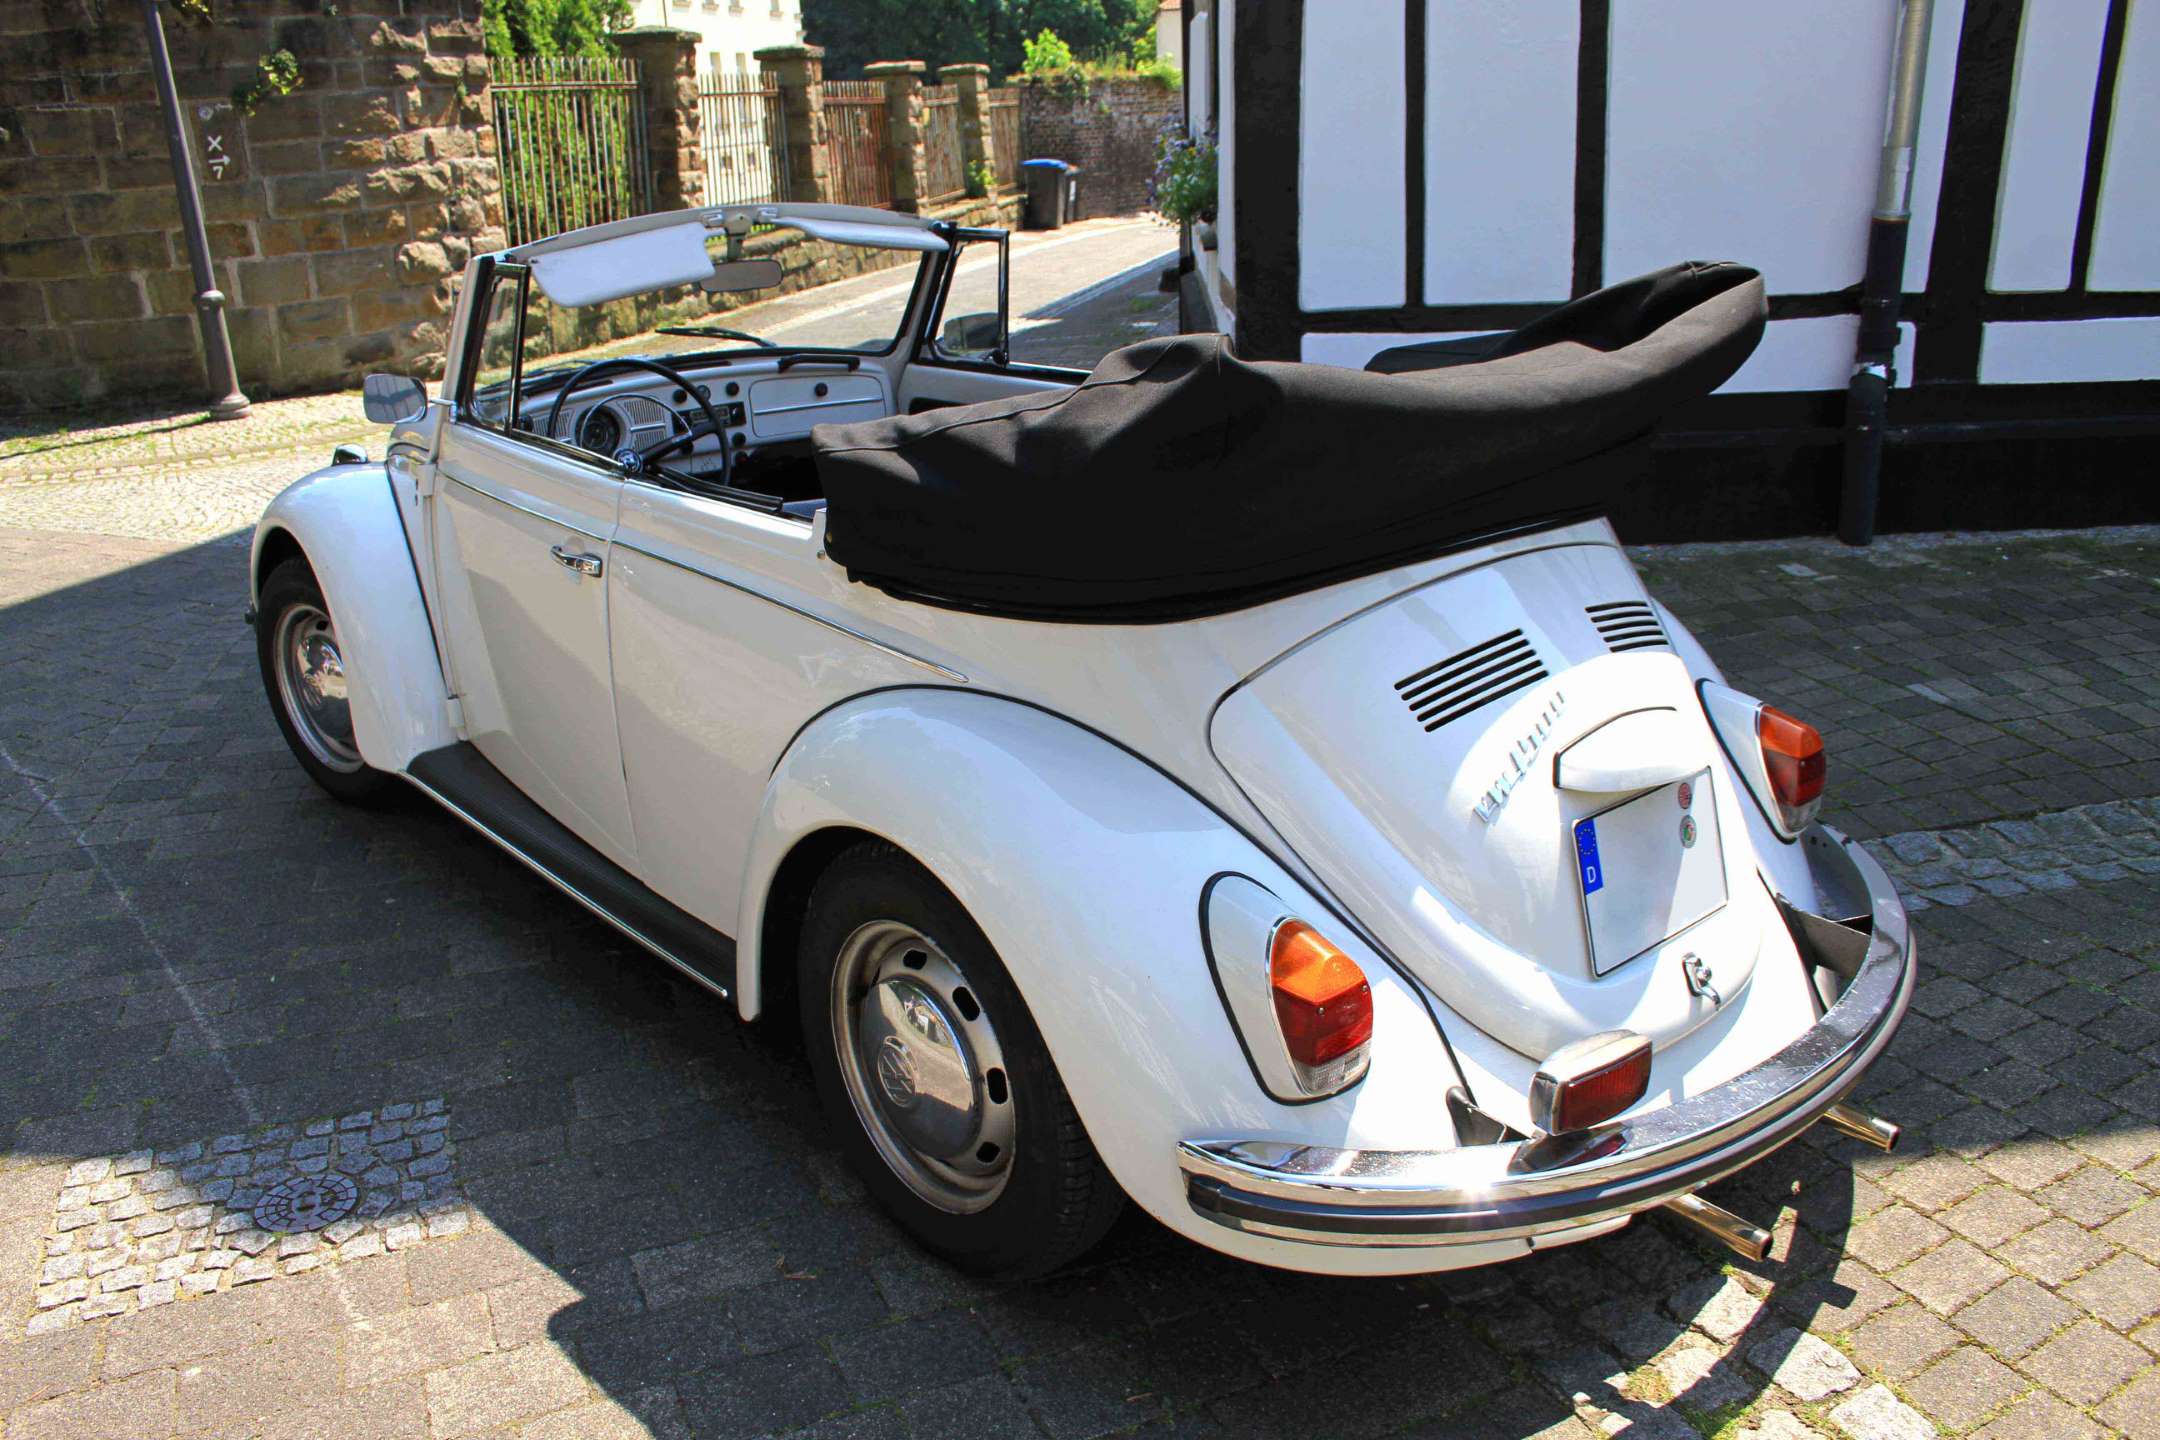 Car Vw Volkswagen Beetle 1303 Stockfotos und -bilder Kaufen - Alamy